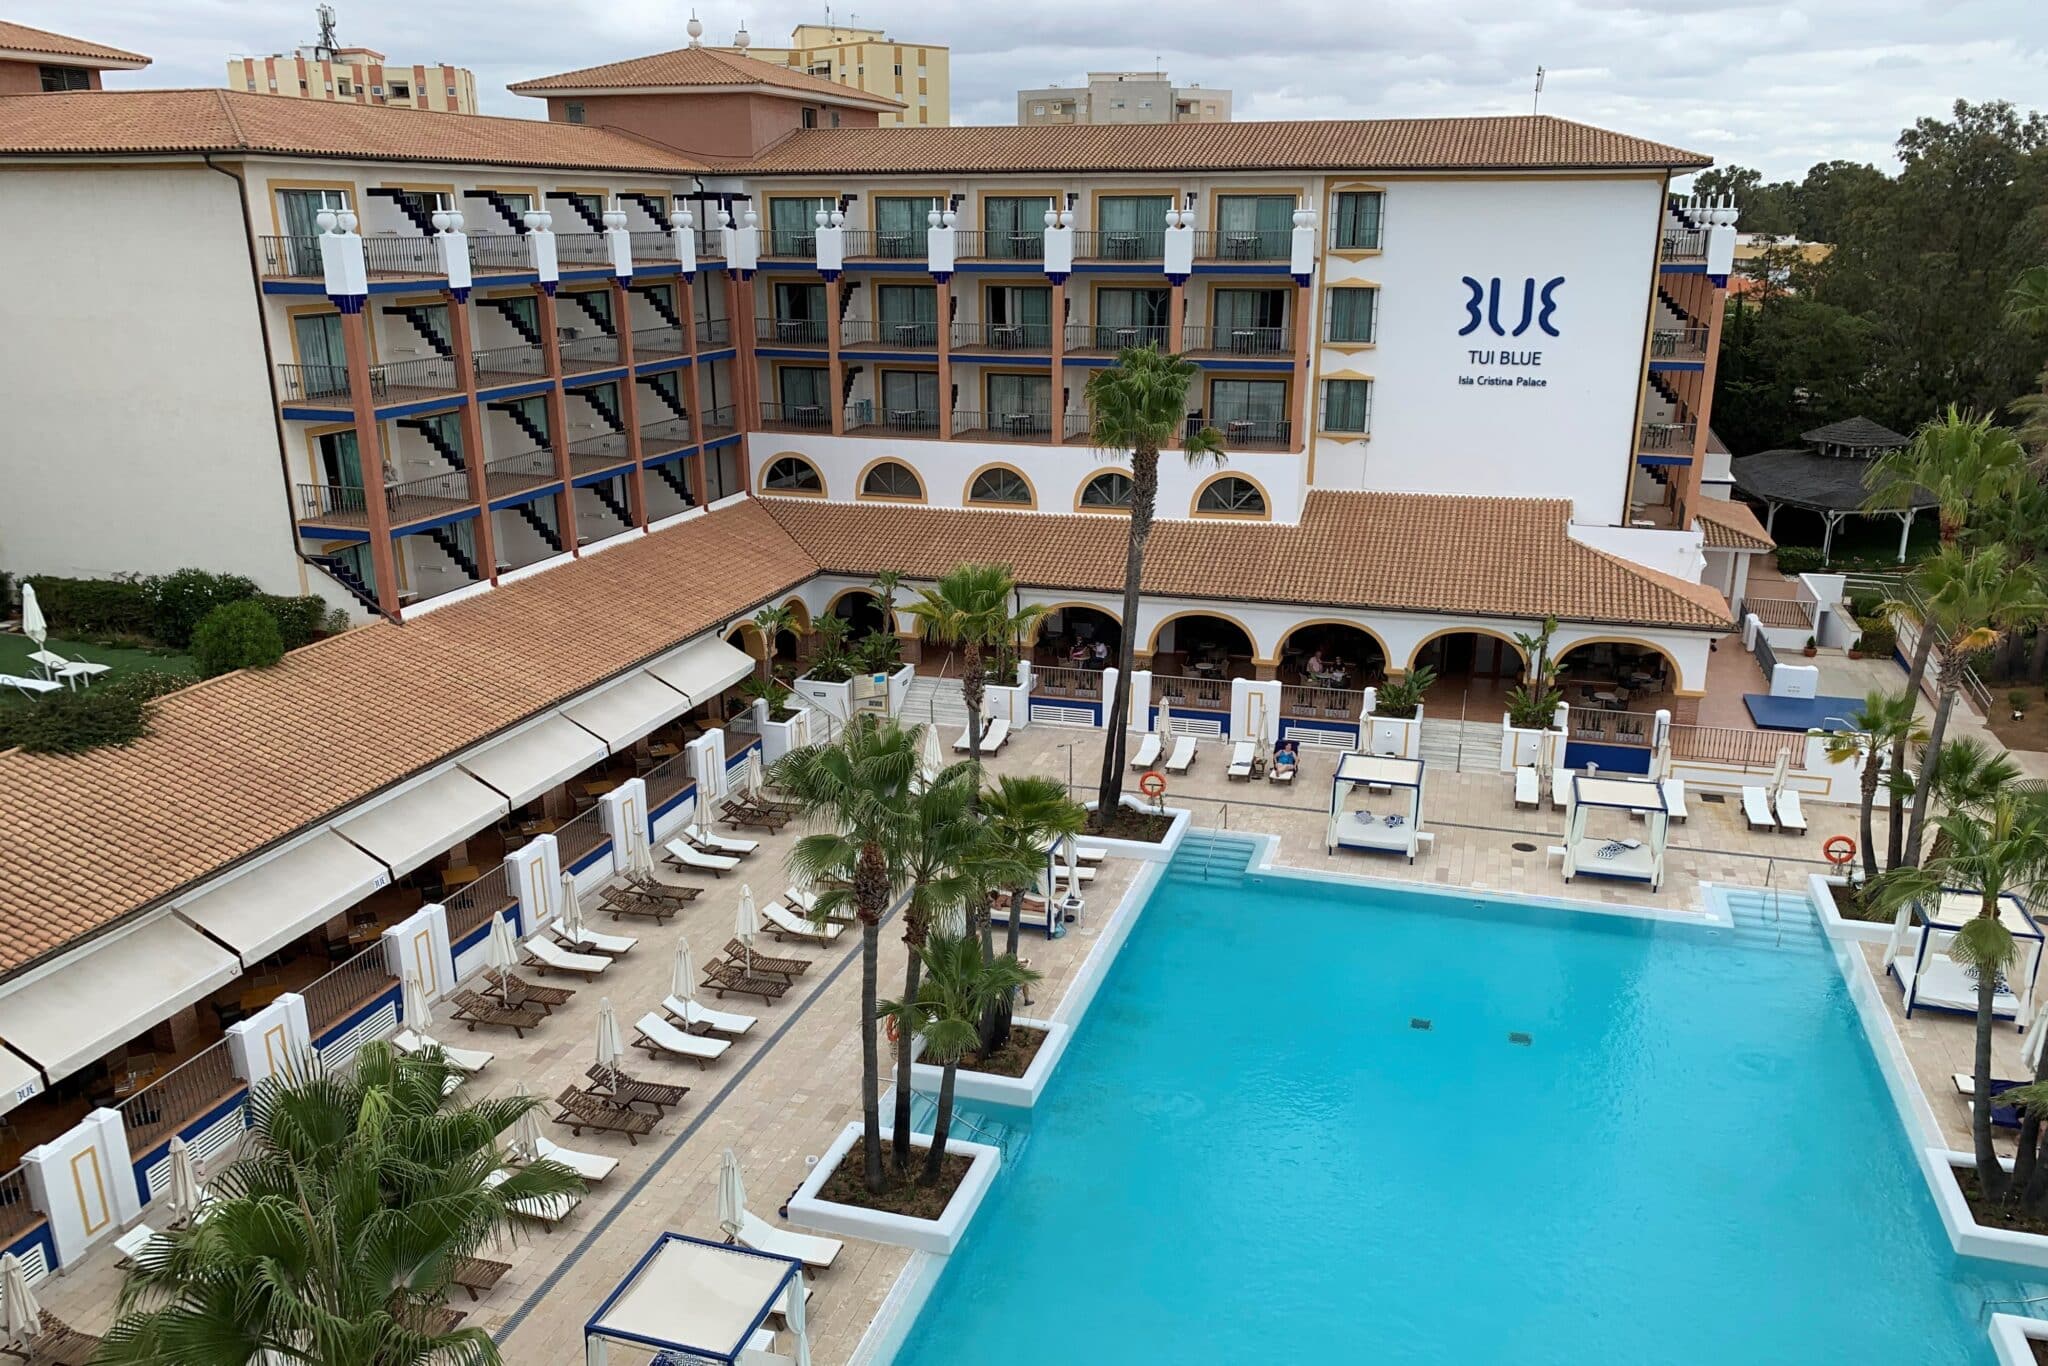 Instalaciones del hotel Tui Blue Isla Cristina que ha lanzado la oferta